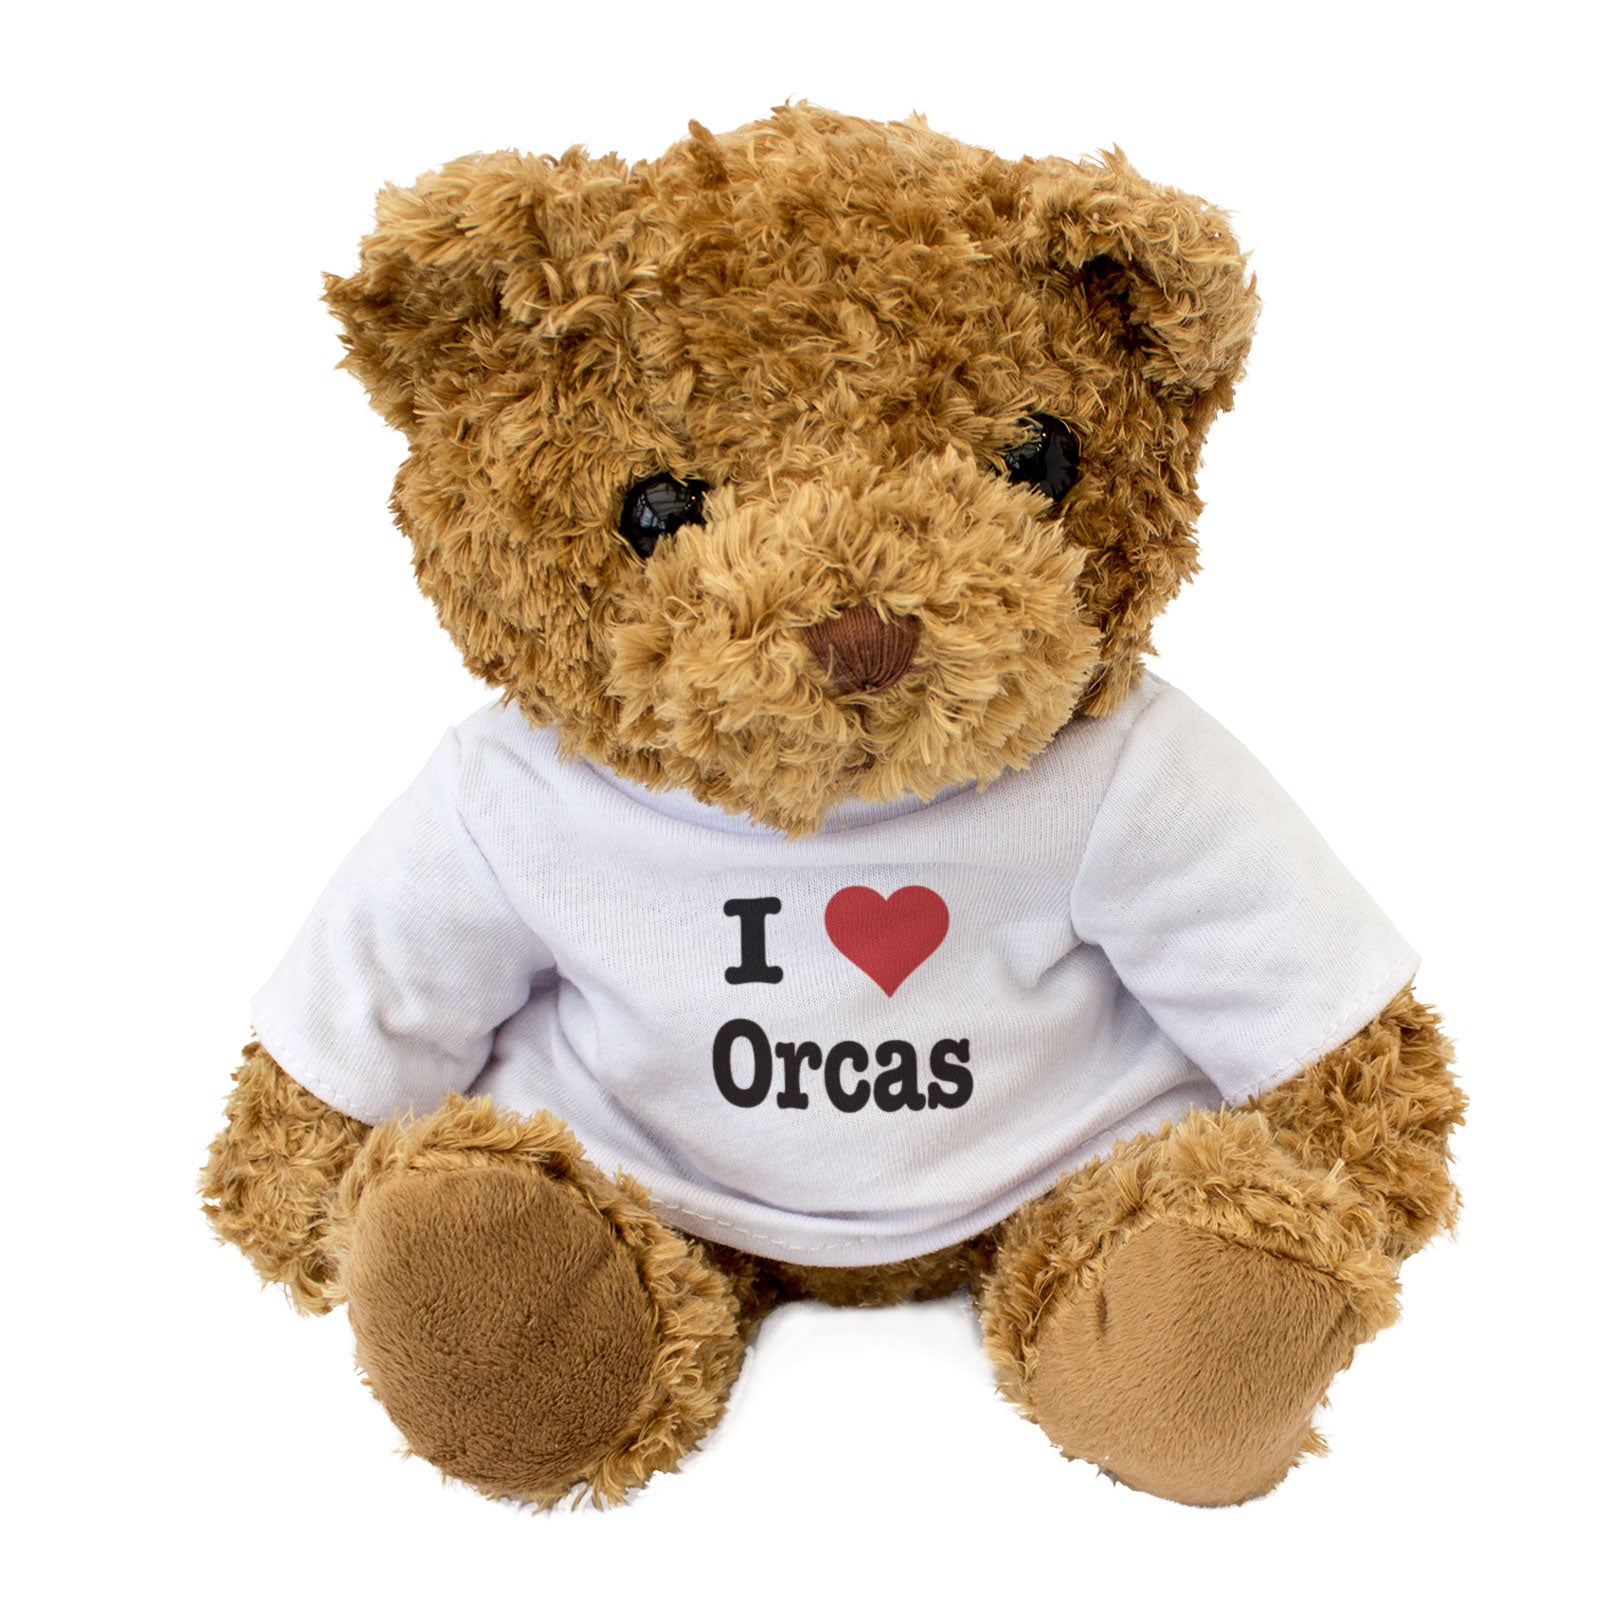 I Love Orcas - Teddy Bear